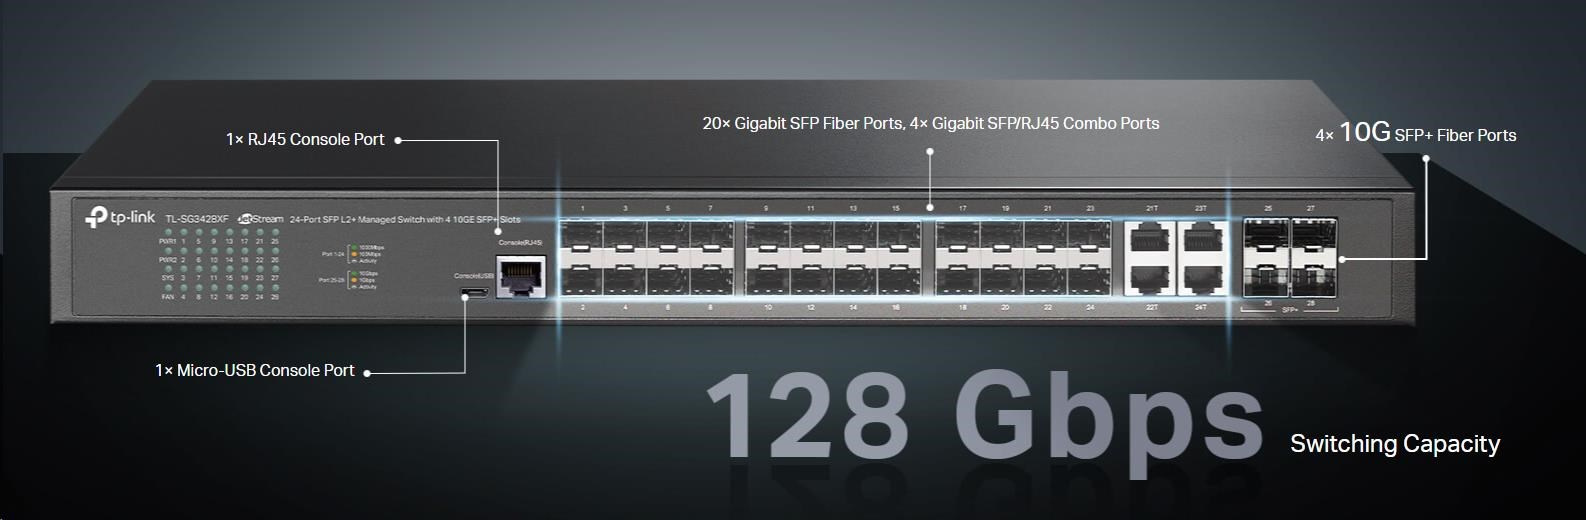 Vysokorychlostní switch TP-Link JetStream TL-SG3428XF má bohatou portovou výbavu – 20x GbE SFP slot, 4x GbE SFP/RJ-45 Combo port, 4x 10G SFP+ slot, 1x RJ-45 Console Port, 1x microUSB Console Port.